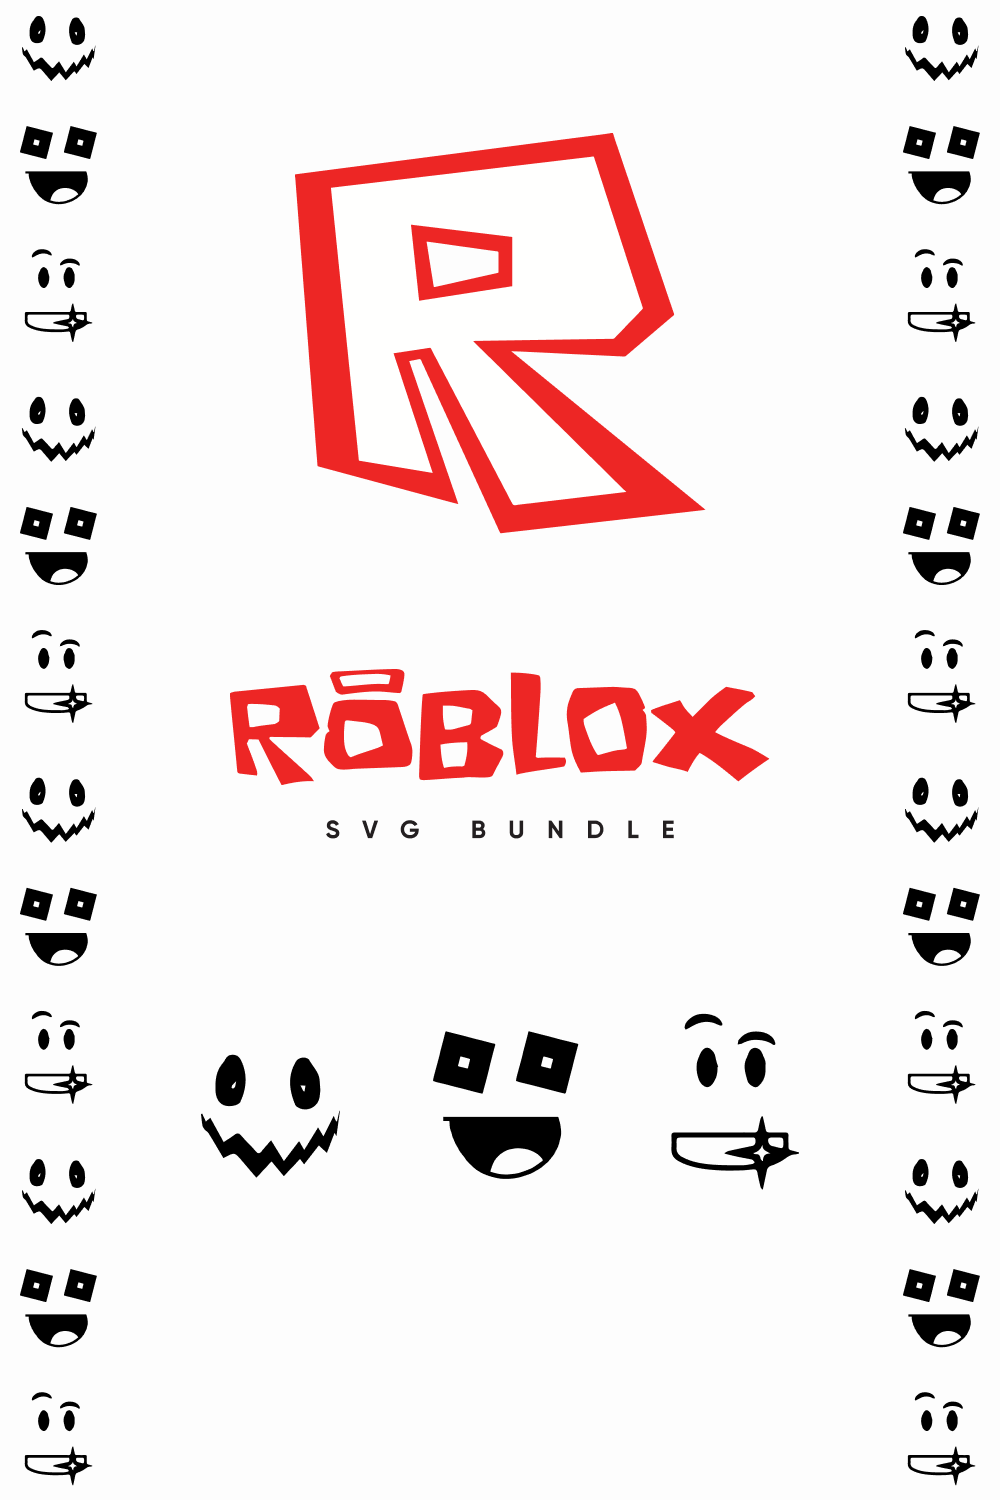 Roblox SVG Files Bundle pinterest image.